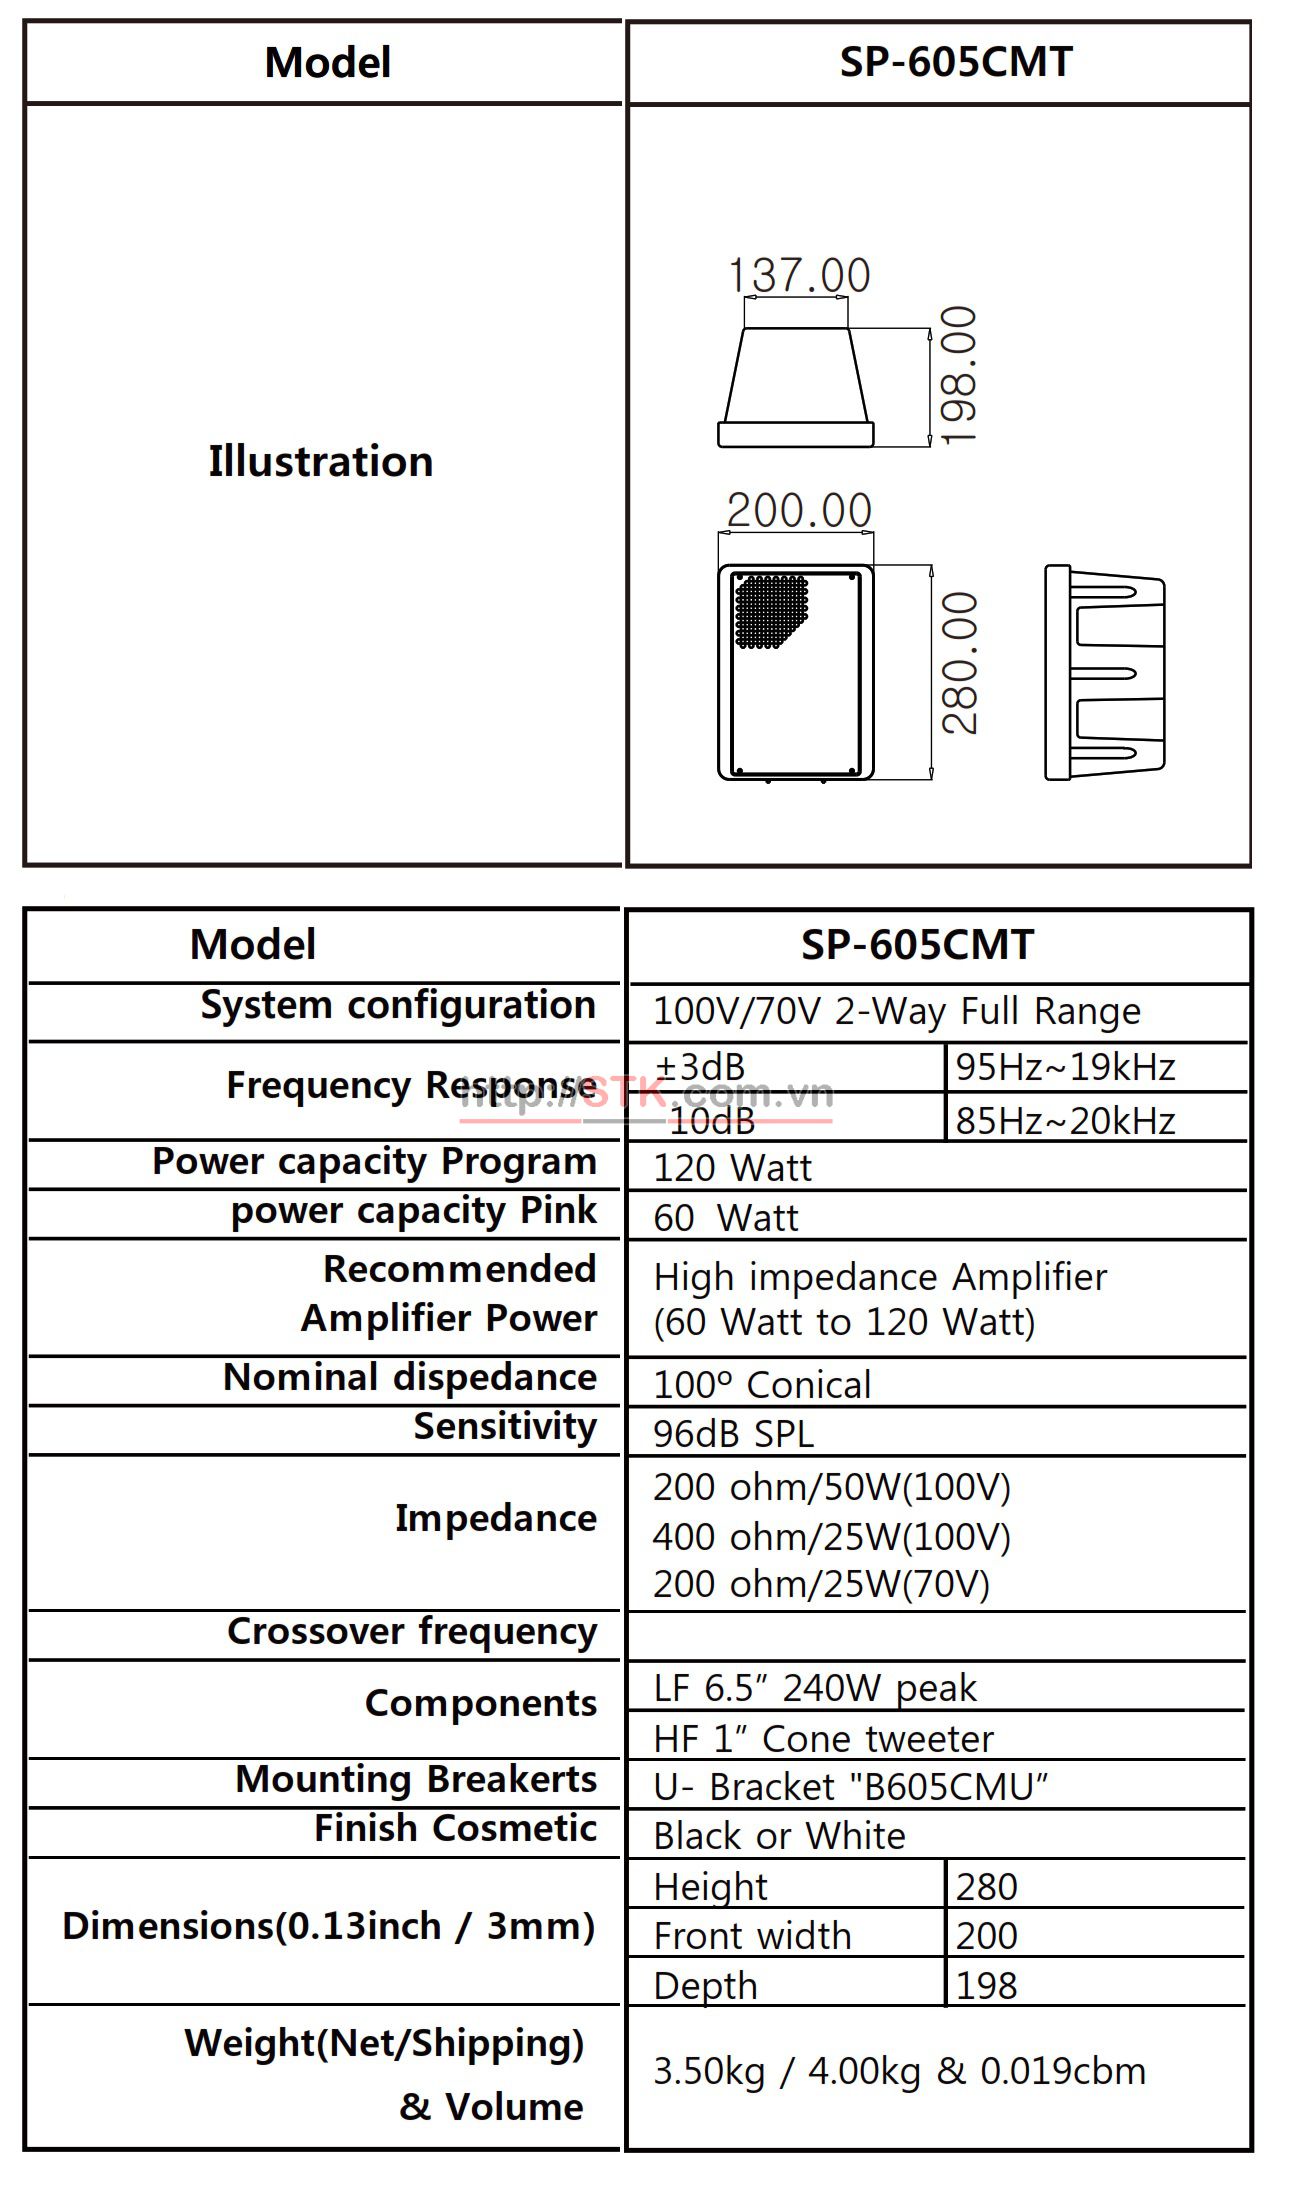 Loa thông báo có biến áp 60W: STK SP-605CMT